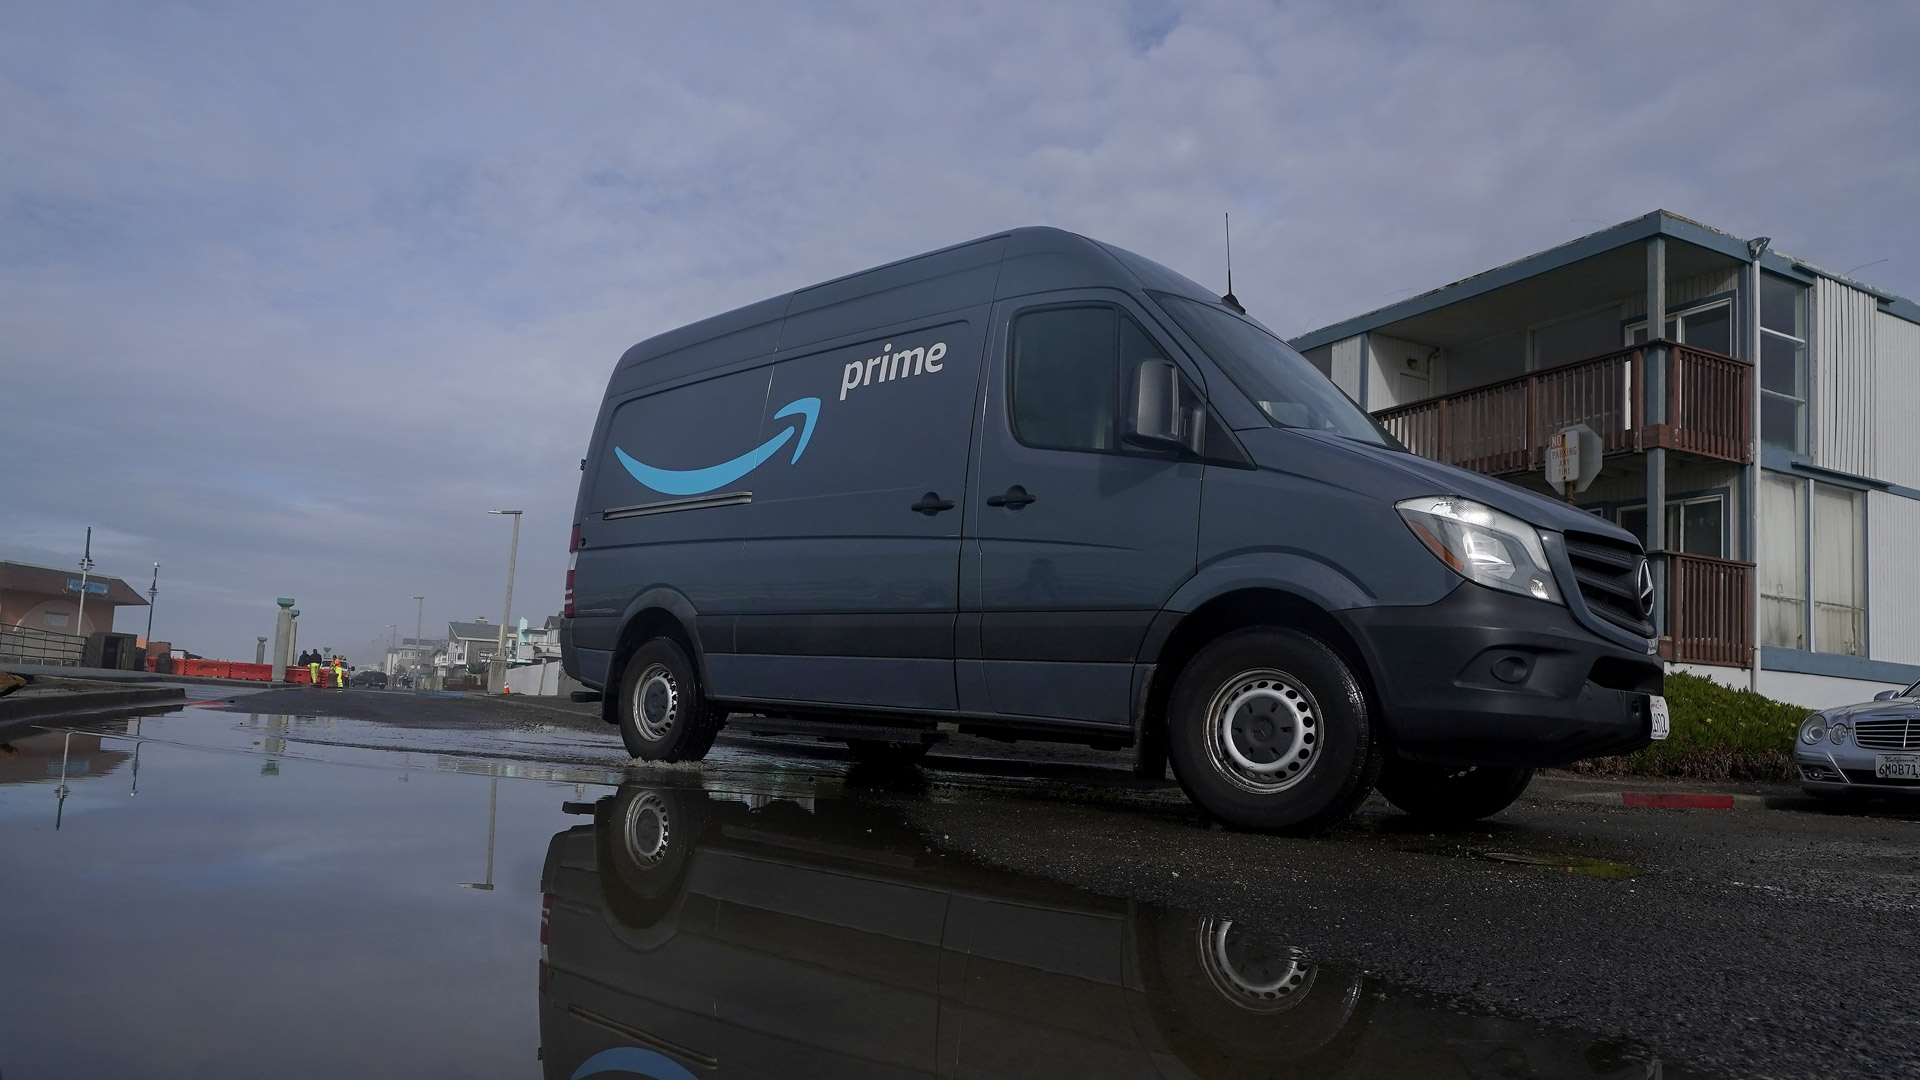 Lieferwagen von Amazon: Der Online-Versand ist dabei, einen eigenen globalen Lieferdienst aufzubauen.